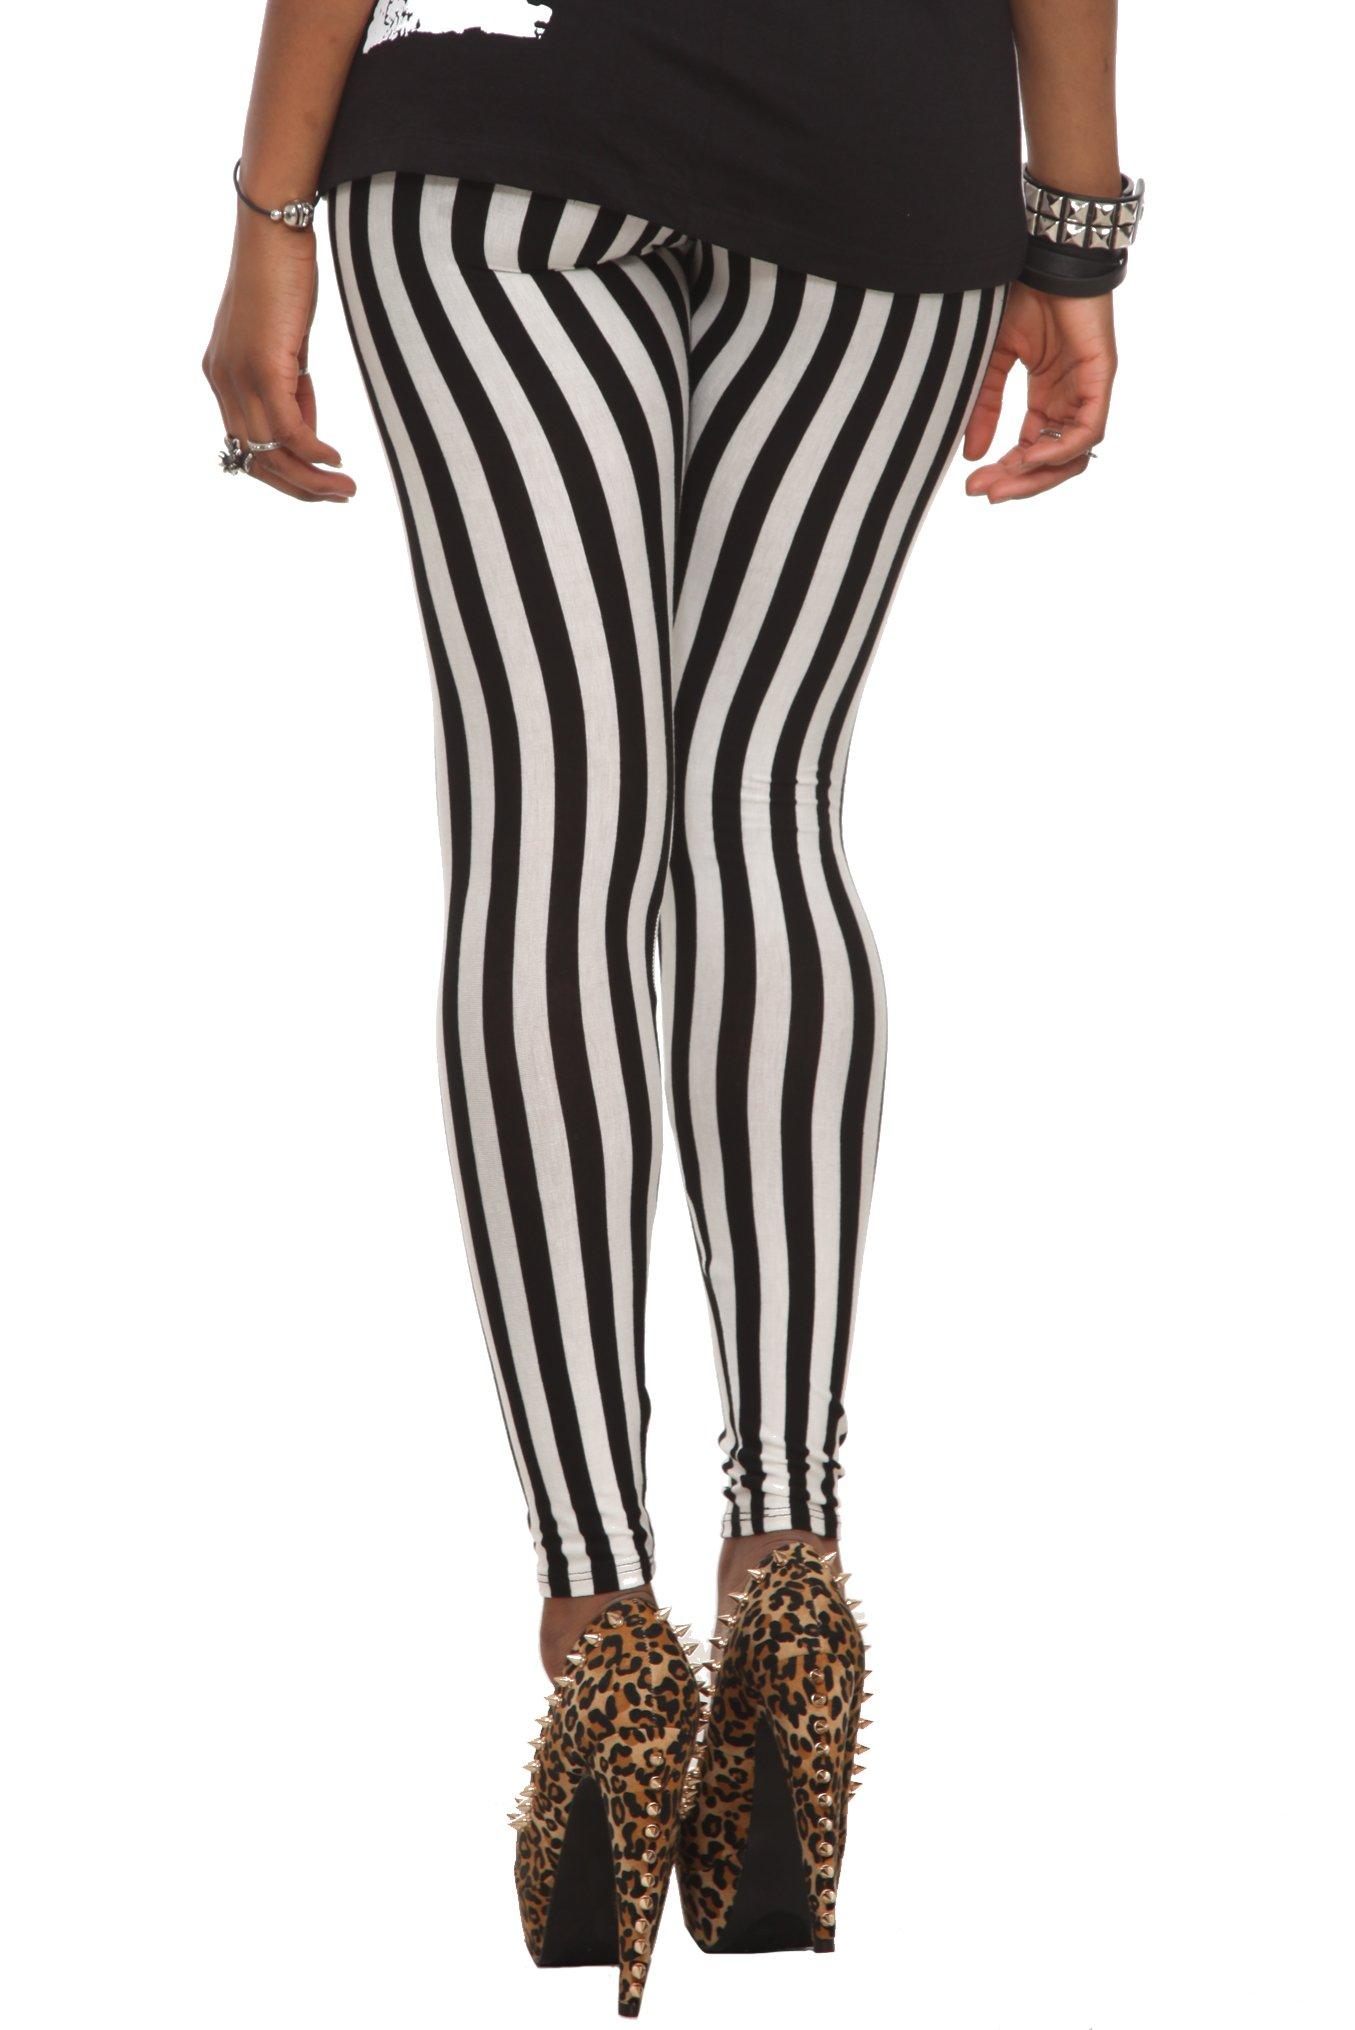 Black & White Stripe Leggings, , alternate